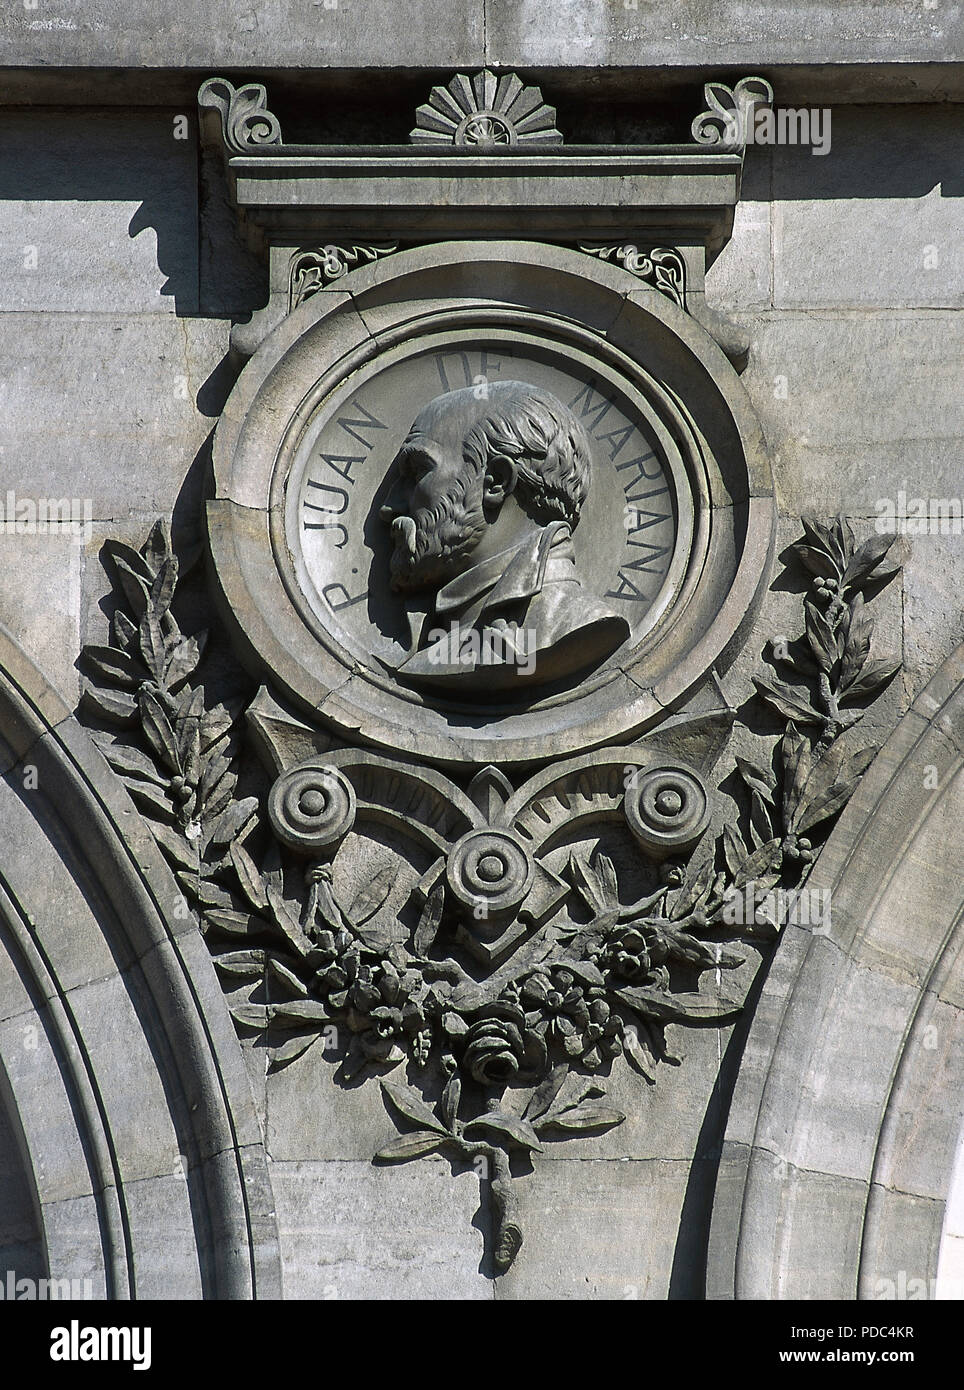 Juan de Mariana (1536-1624). Jesuita español. Alivio en un medallón. Detalle de la fachada de la Biblioteca Nacional. Madrid, España. Foto de stock